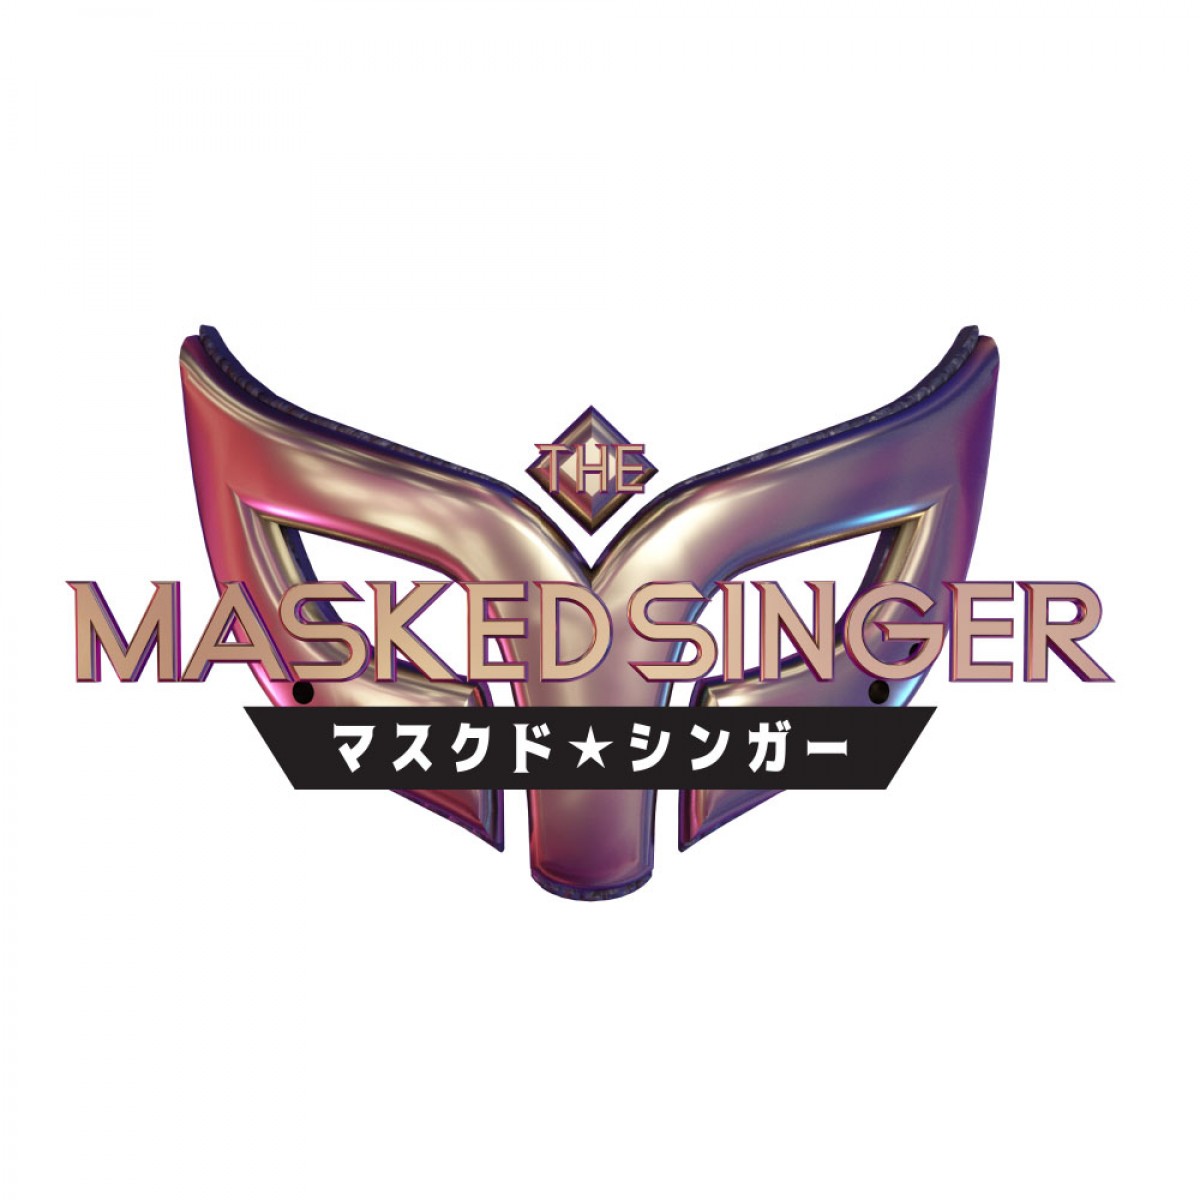 大泉洋、パフォーマーが誰かを推理『ザ・マスクド・シンガー』日本版MCに就任